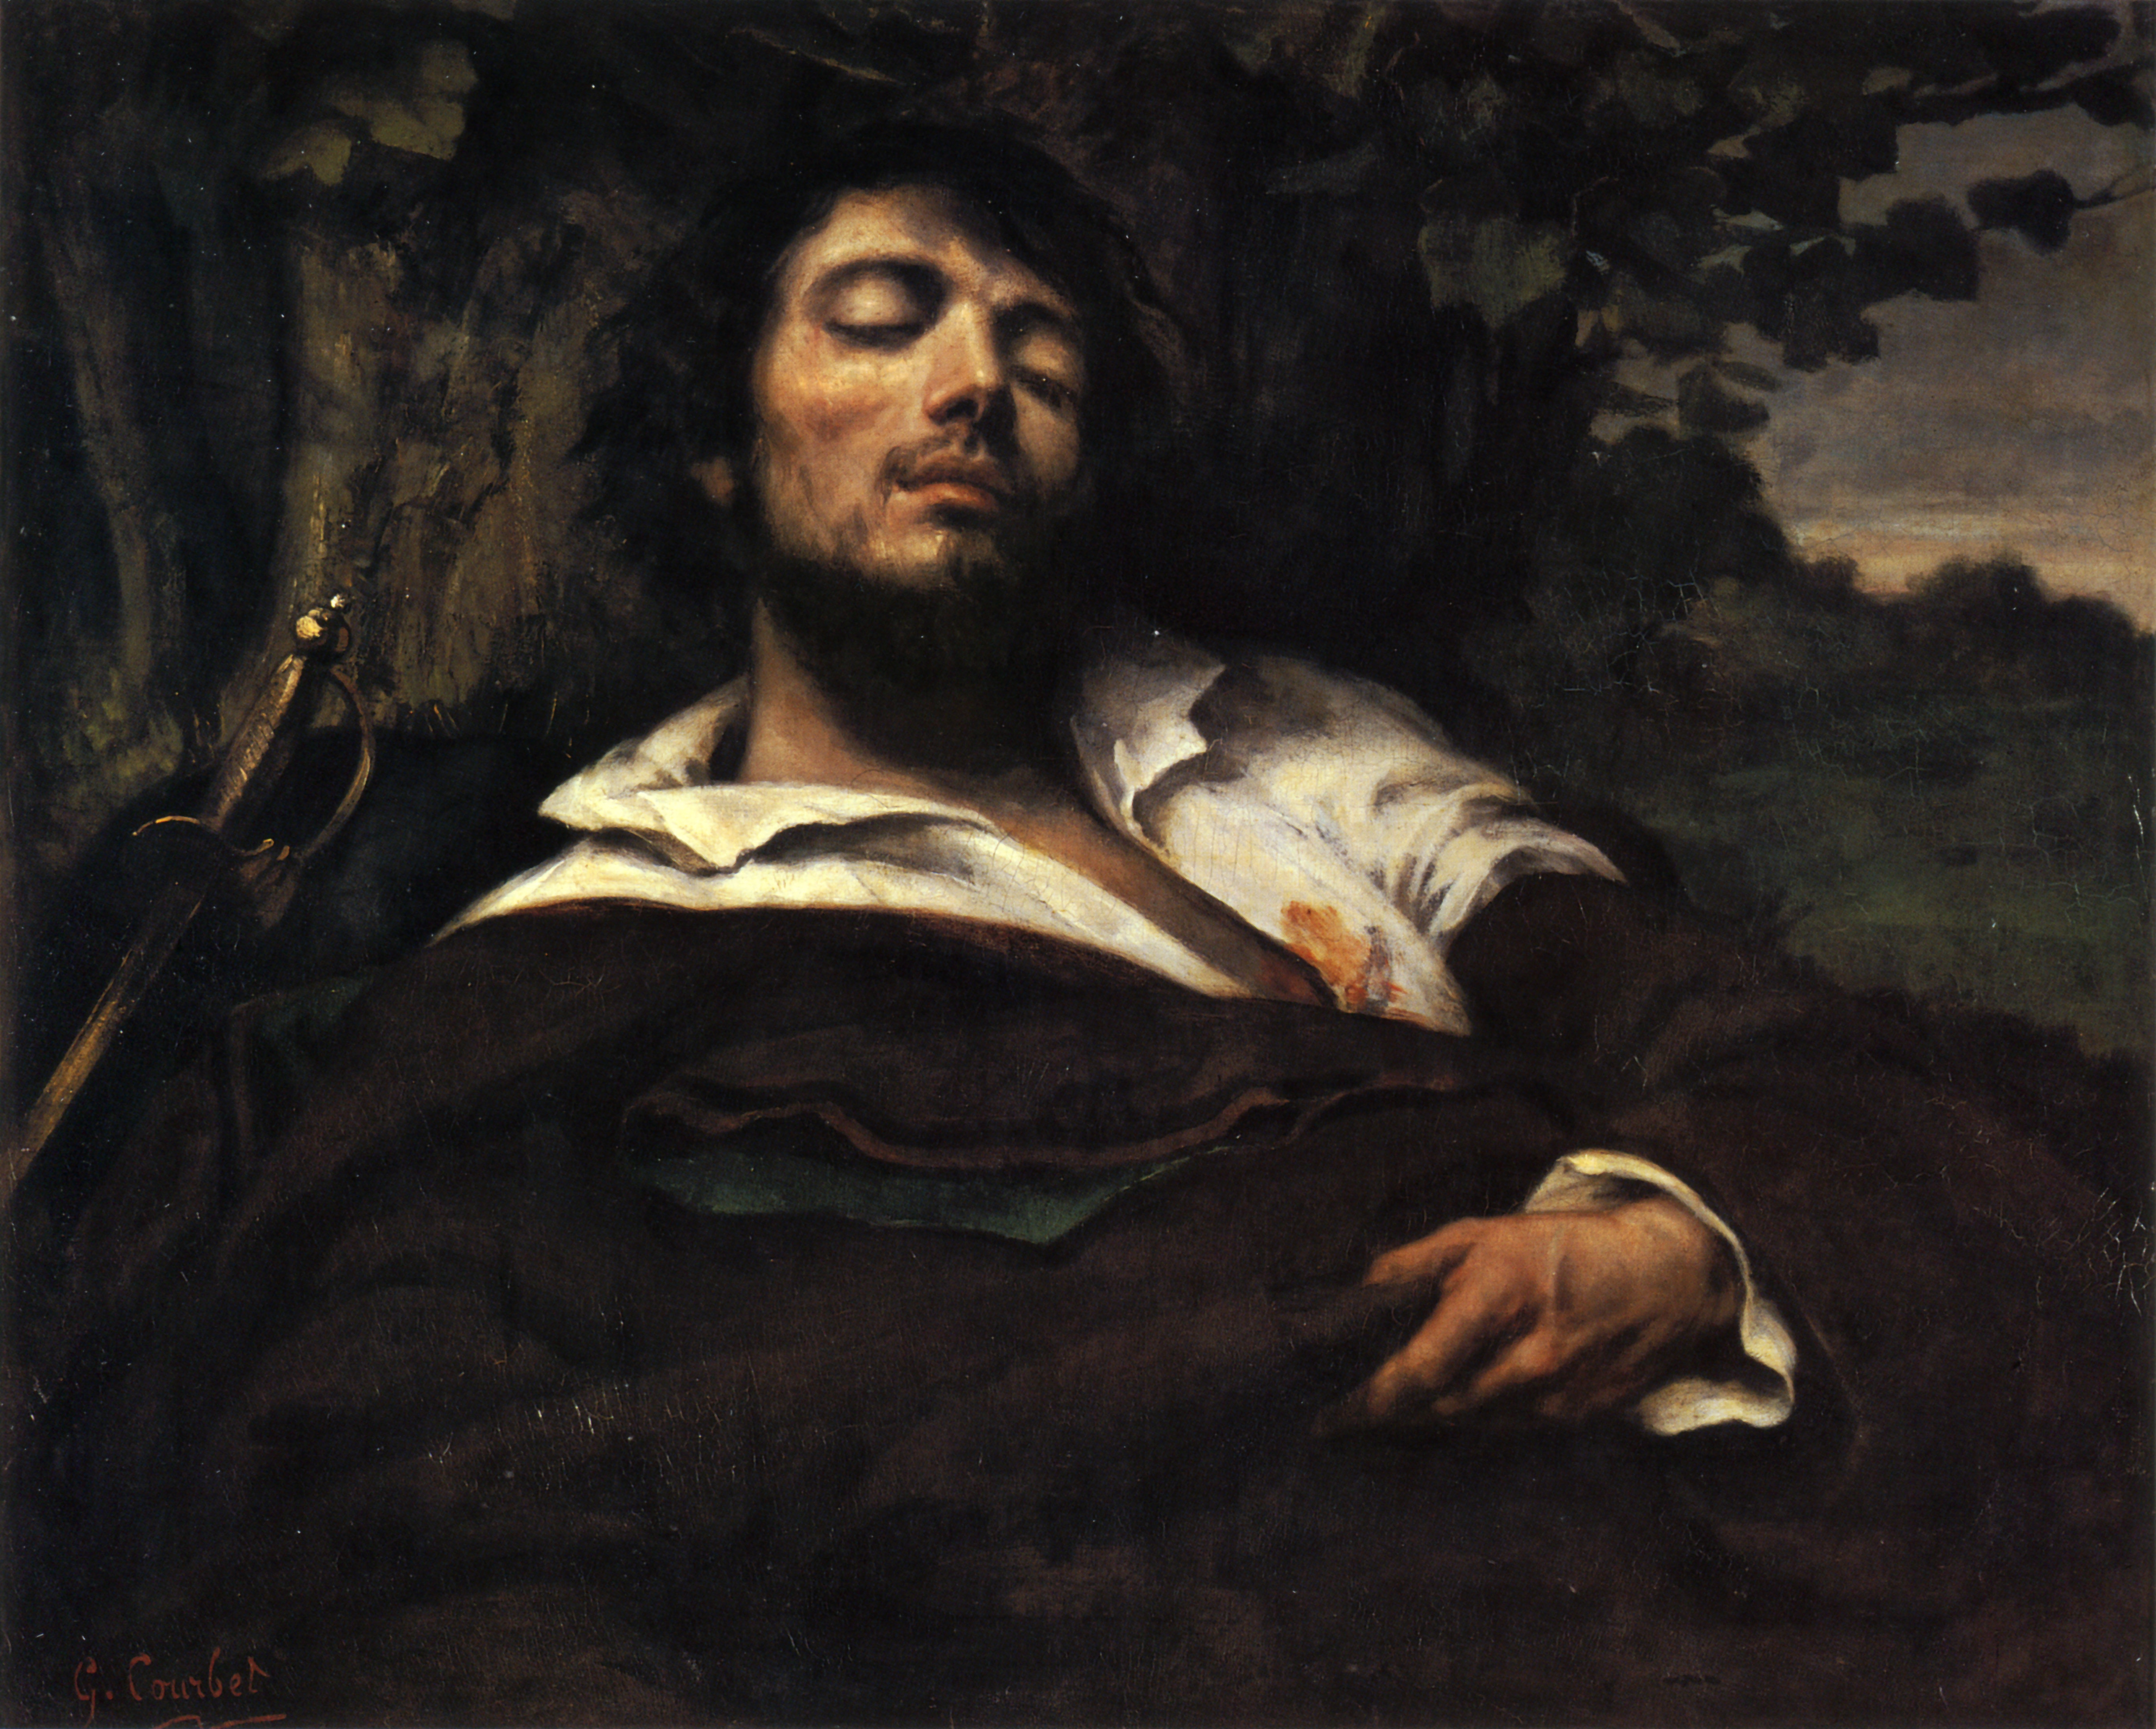 Retrato del artista llamado: el hombre herido by Gustave Courbet - between 1844 - 1855 - 81.5 × 97.5 cm Musée d'Orsay